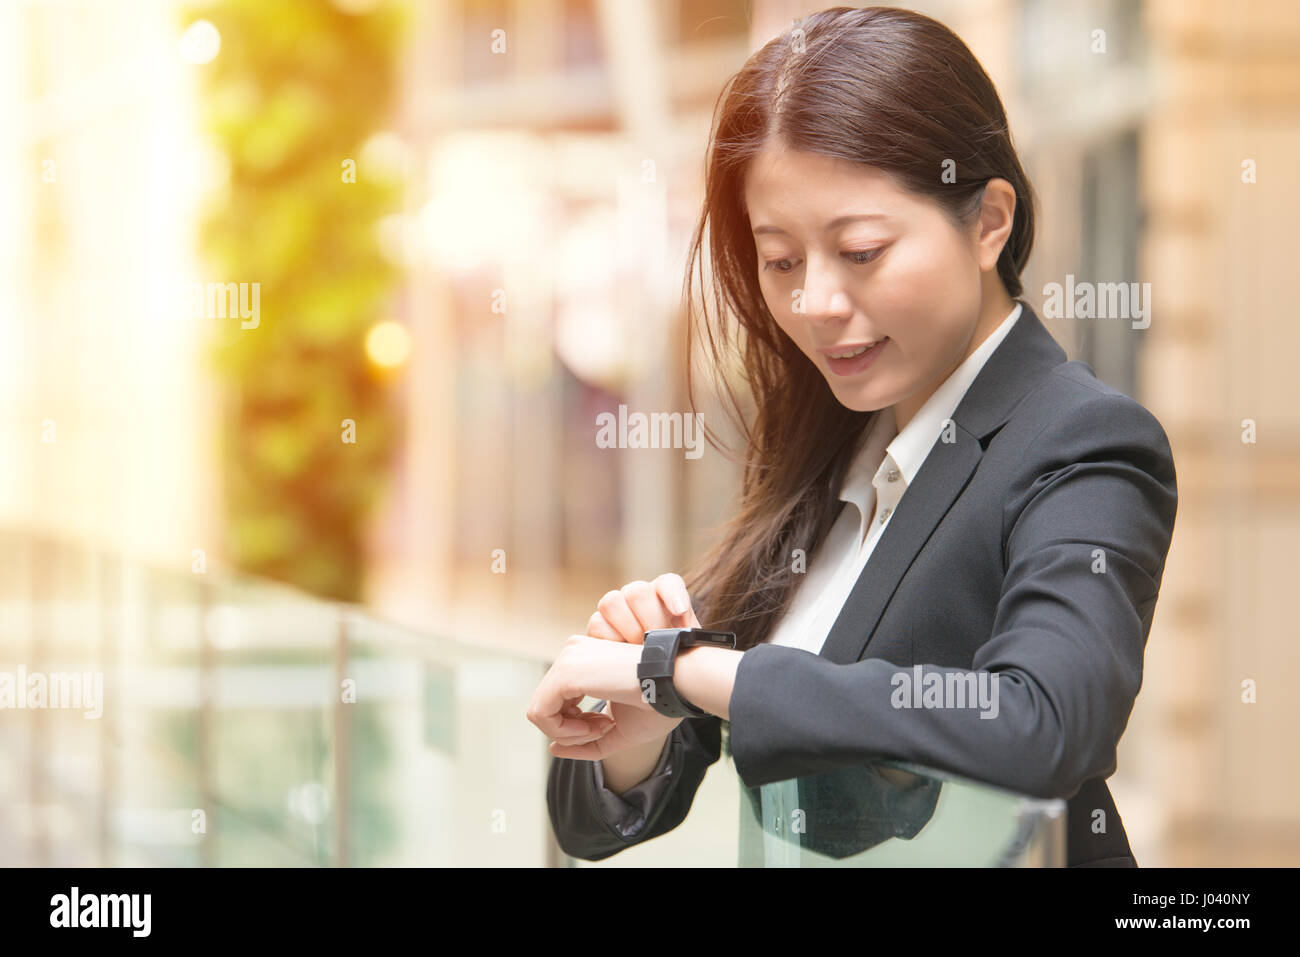 Les hommes et la technologie concept. Happy business woman looking at sa smartwatch. mixed race chinoise asiatique sur fond flou. Banque D'Images